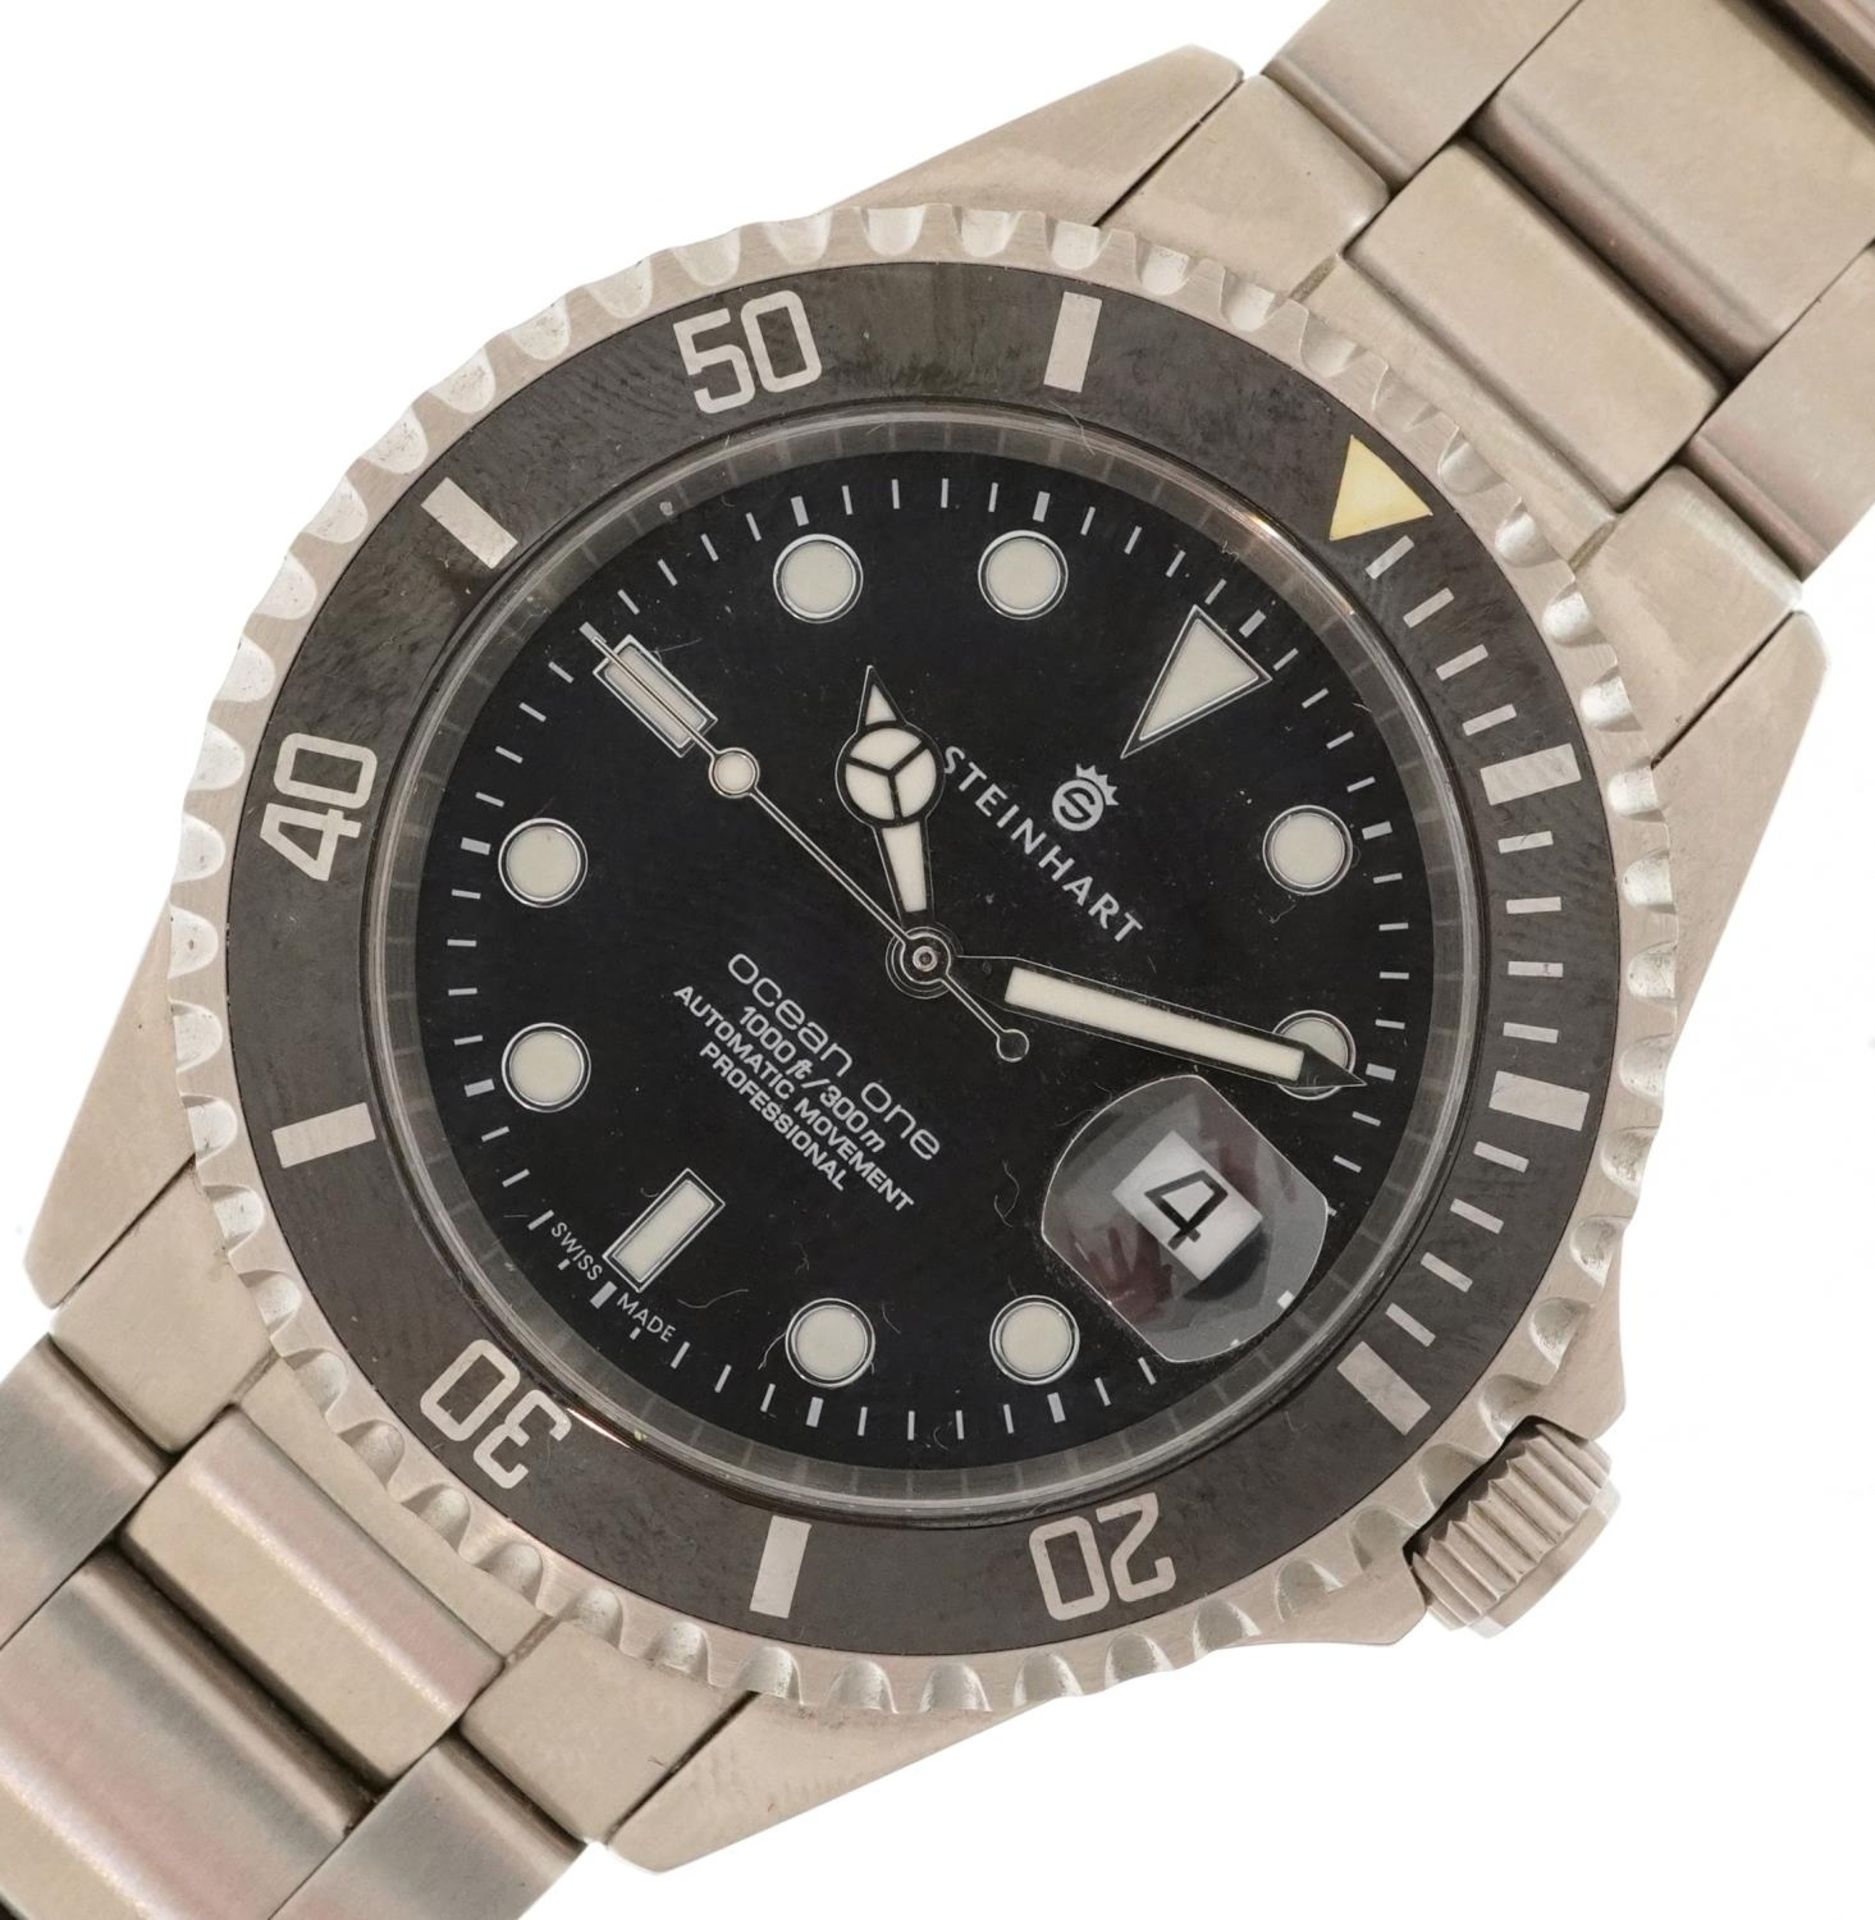 Steinhart, gentlemen's Steinhart Ocean One automatic diver's wristwatch with date aperture, 42mm